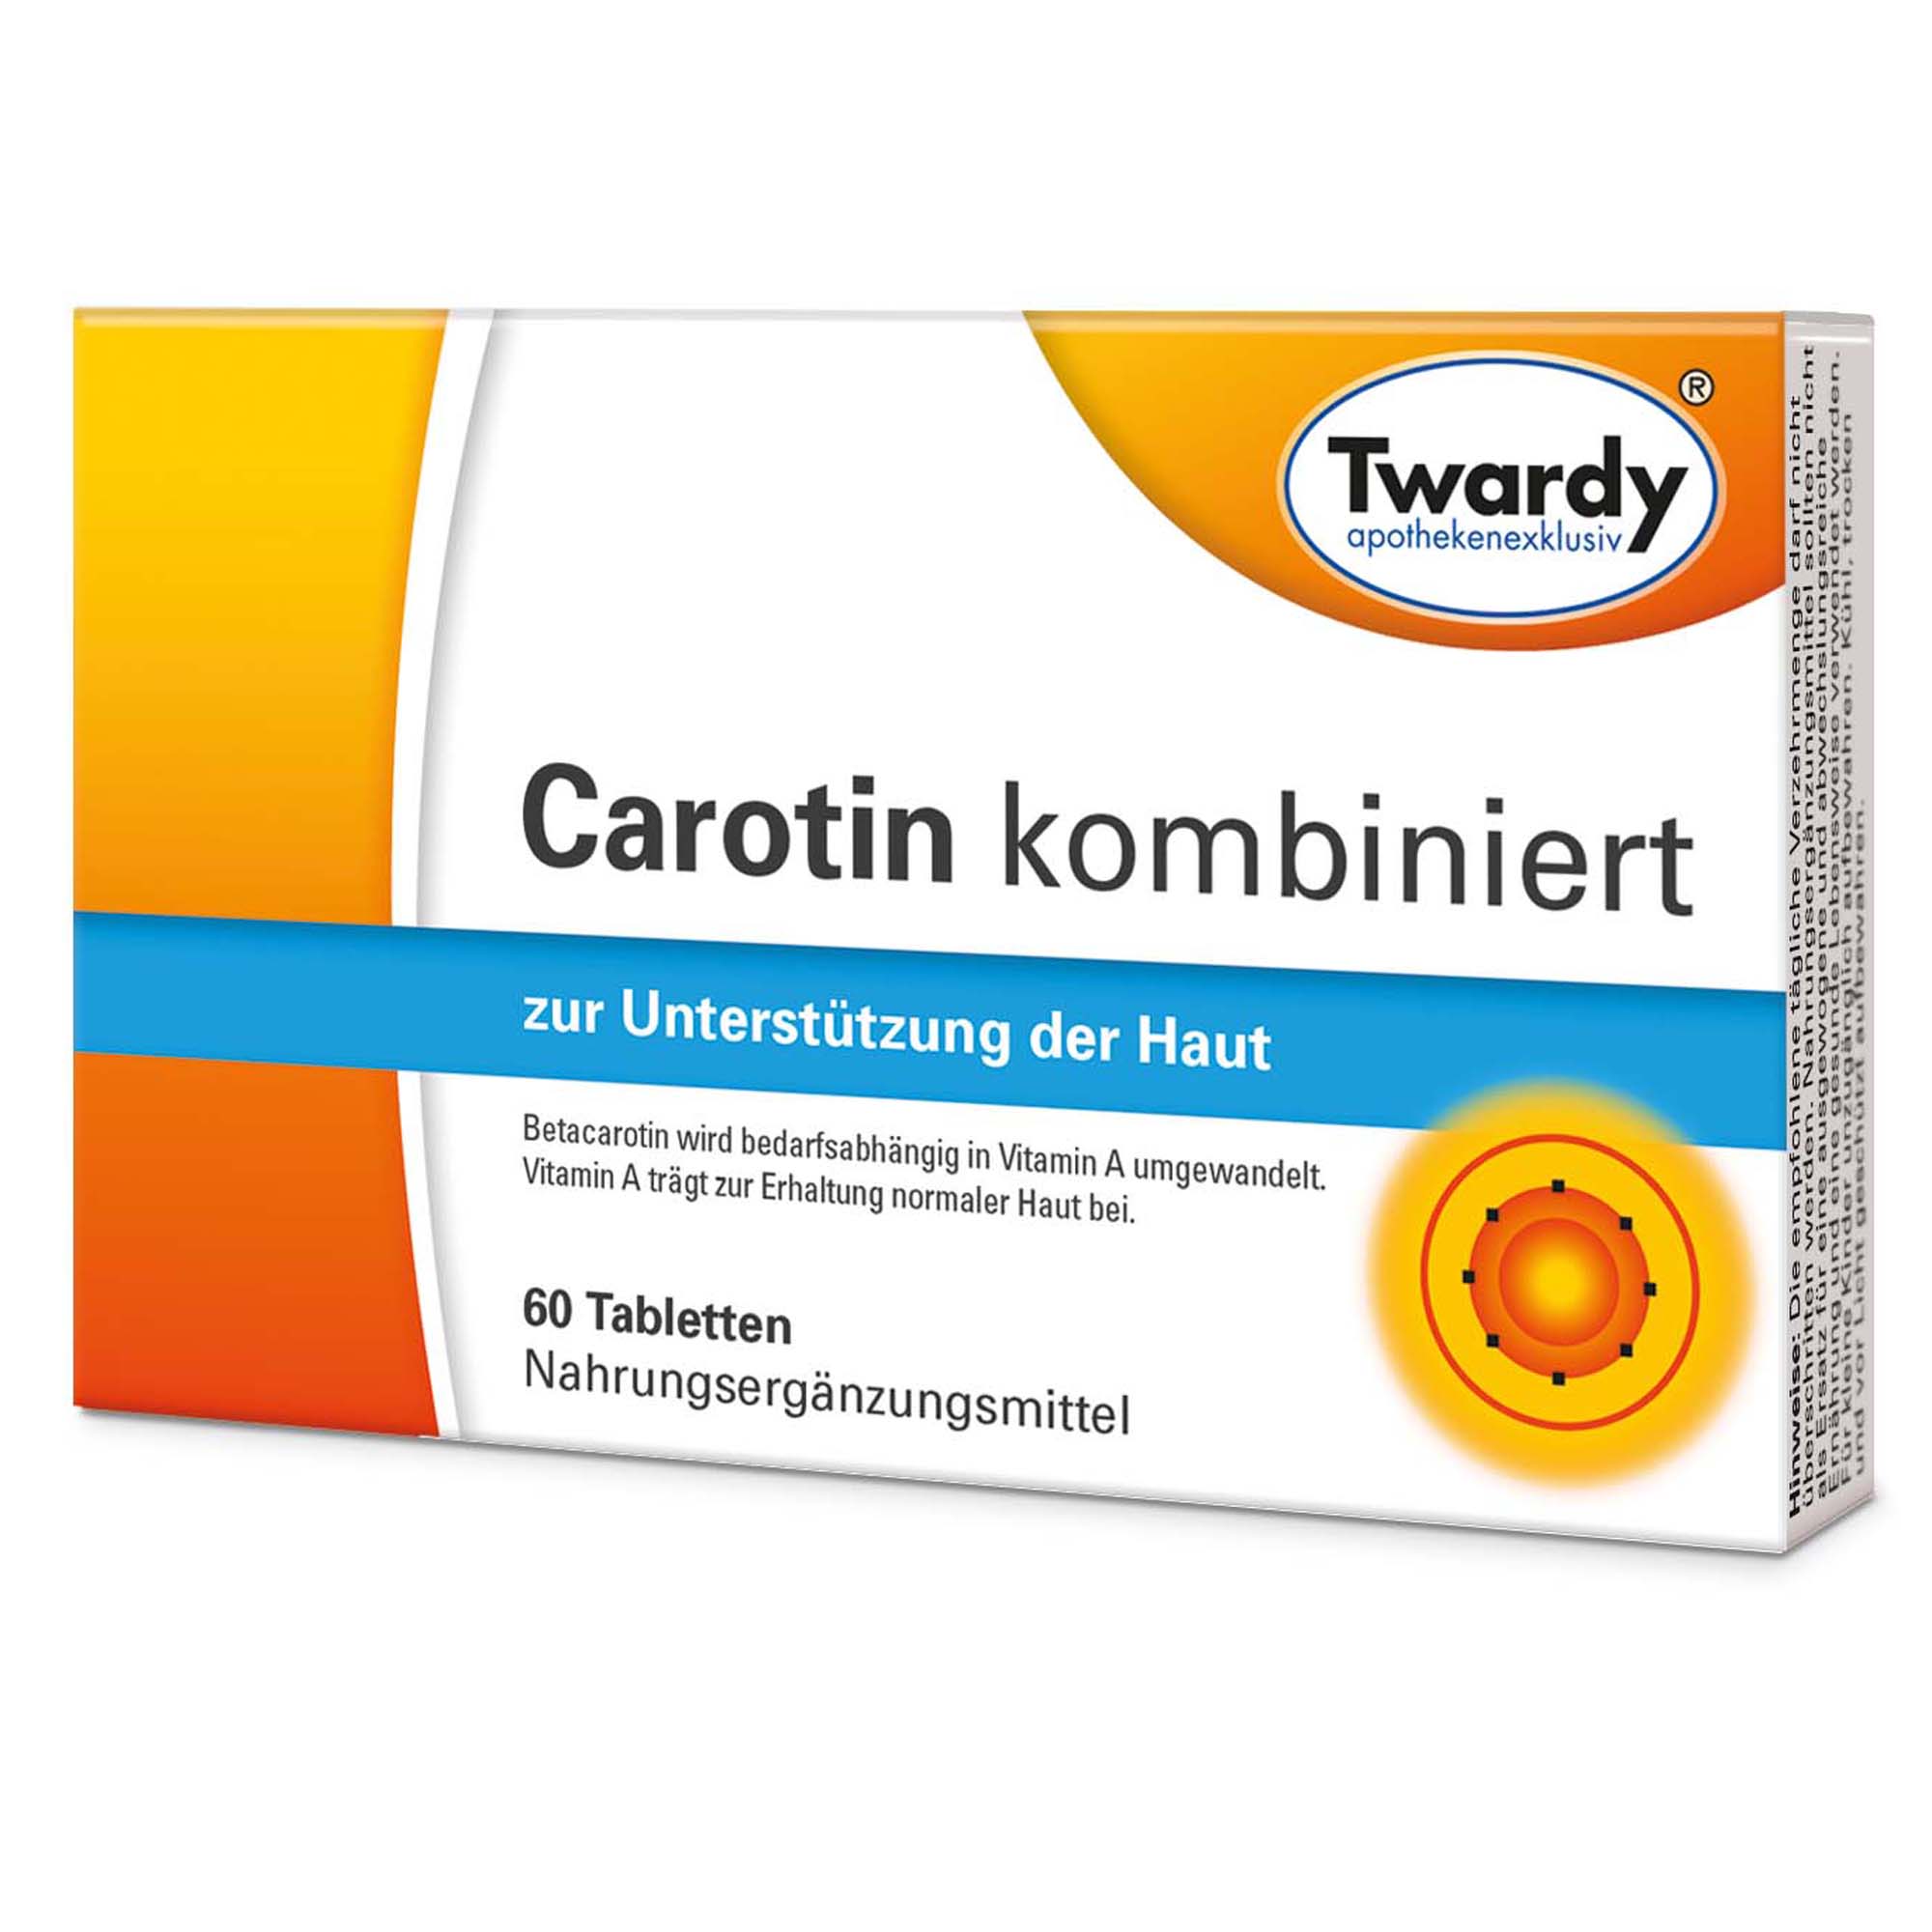 Carotin kombiniert 60 Tabletten